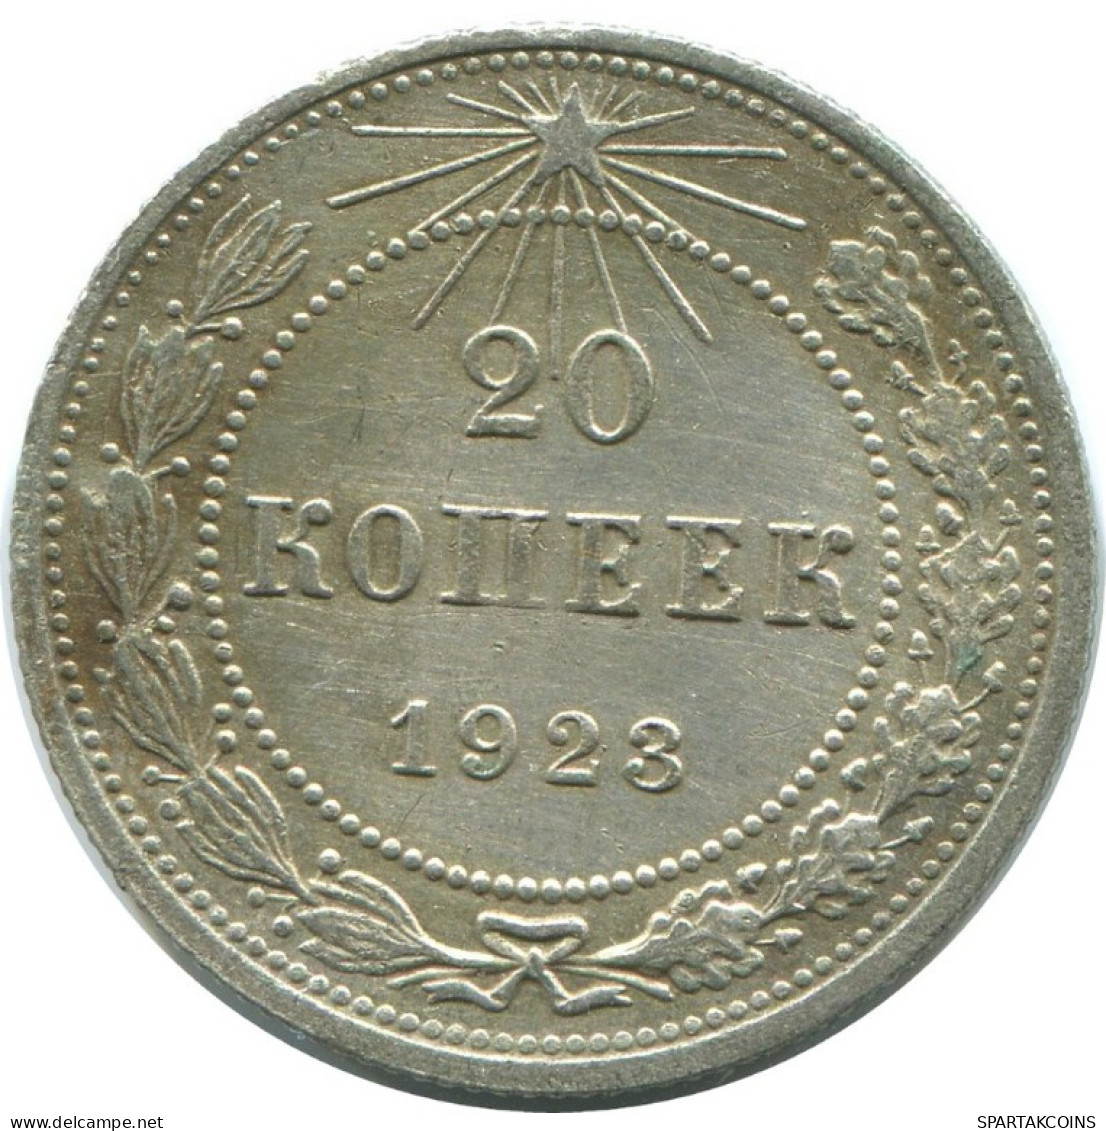 20 KOPEKS 1923 RUSSLAND RUSSIA RSFSR SILBER Münze HIGH GRADE #AF614.D.A - Rusia